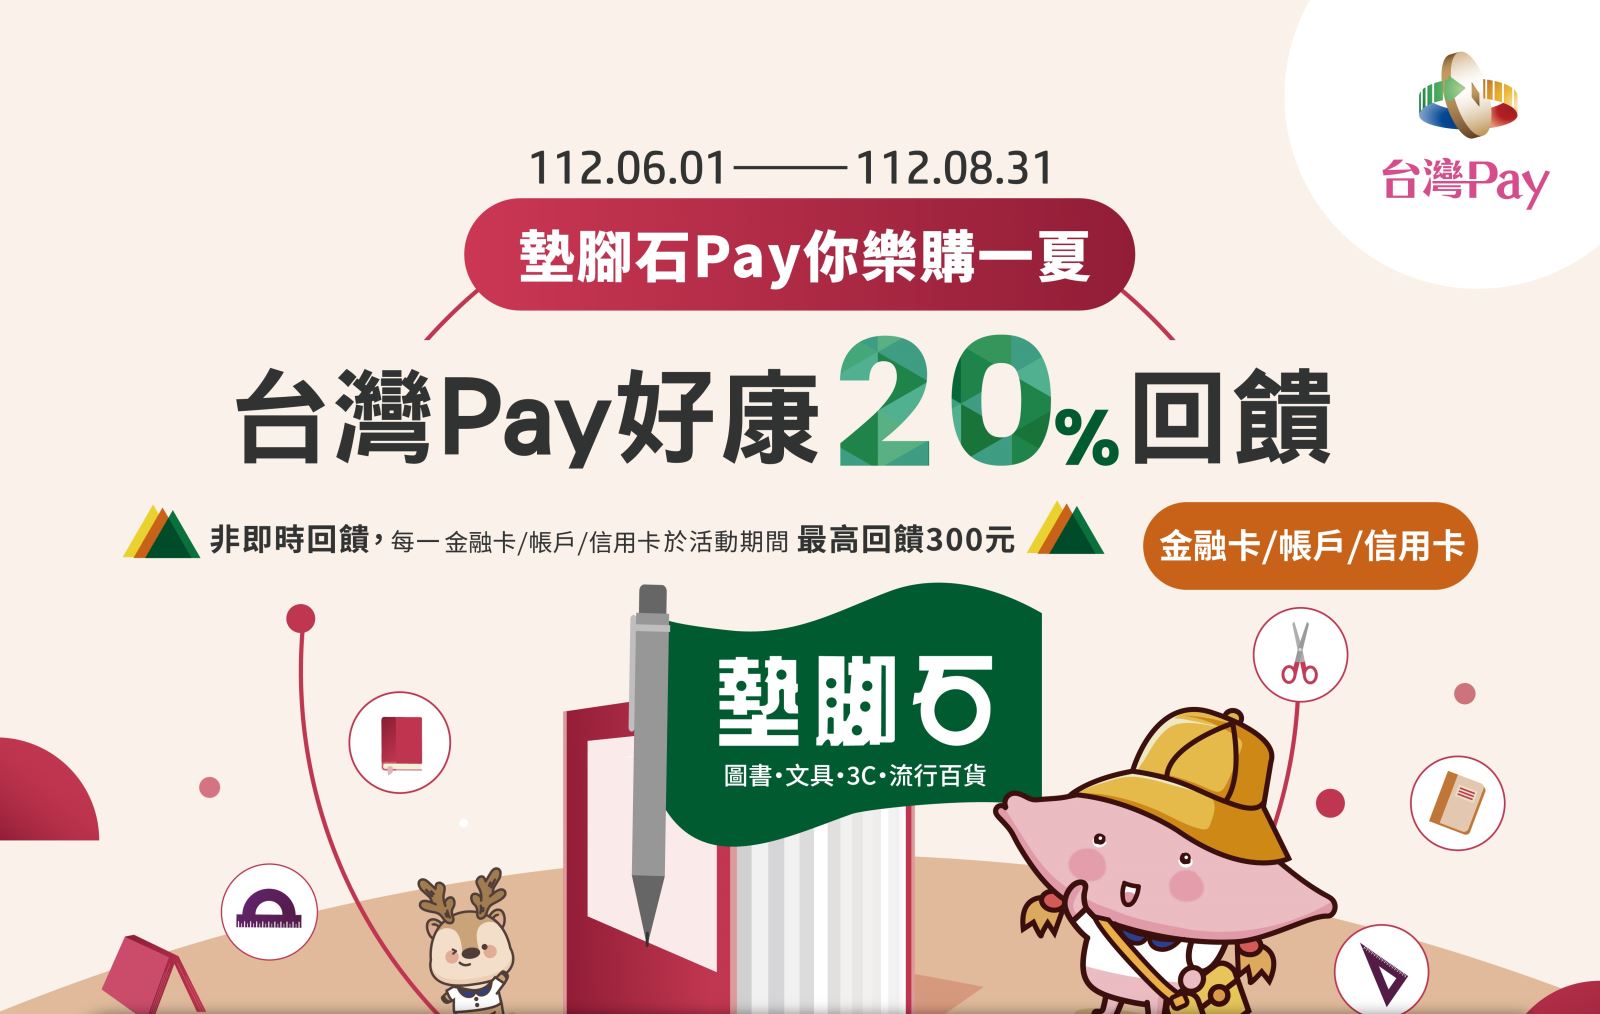 動期間至活動地點消費，並出示「台灣Pay」付款條碼進行支付，單筆交易結帳金額滿新臺幣1,000元(含)以上，即可兌換【200元電子商品券】乙份